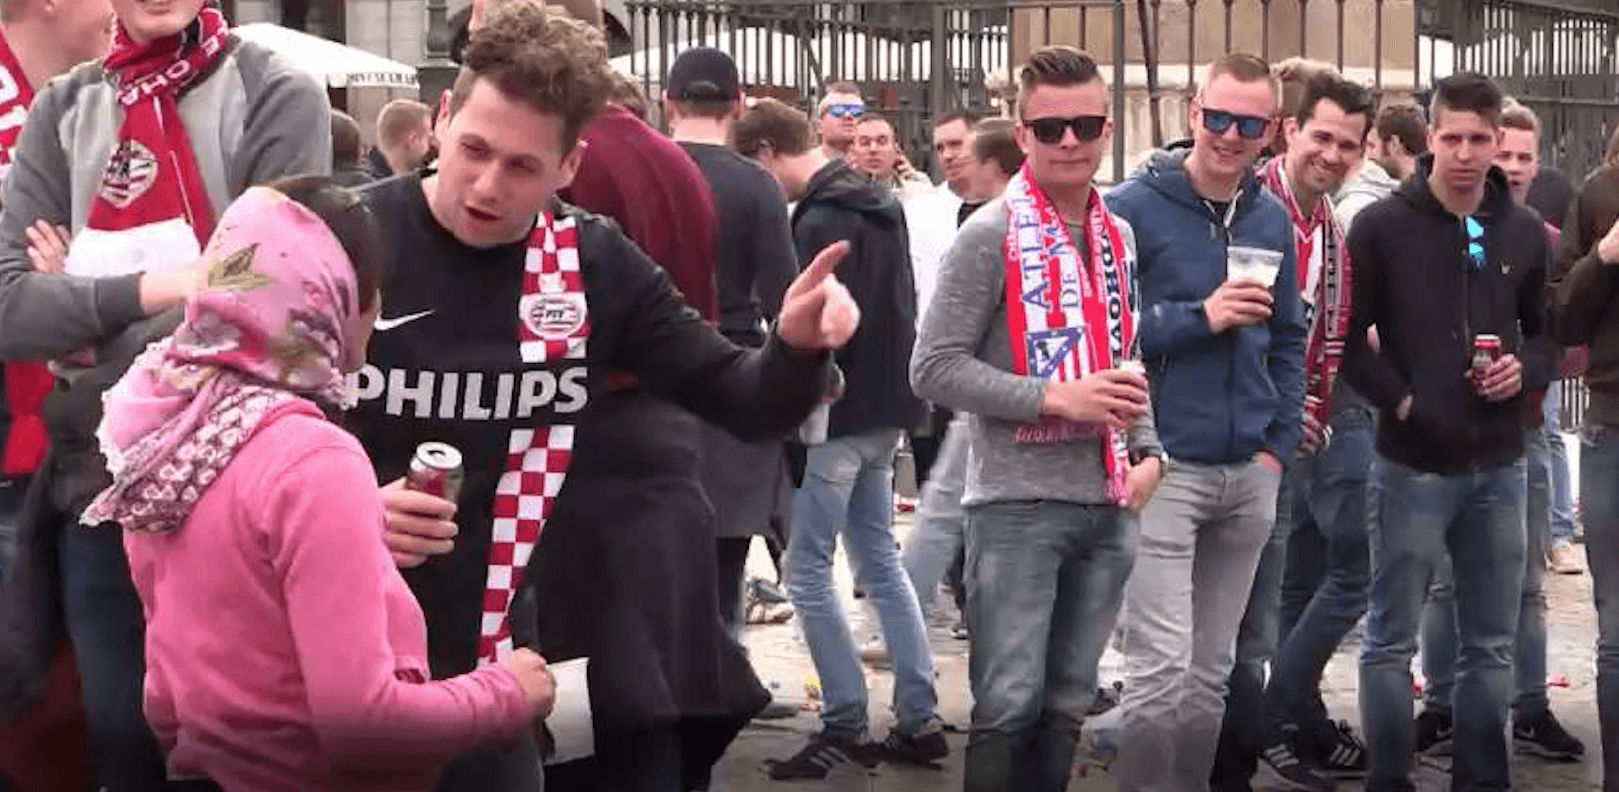 O caso dos fãs holandeses quando a massa aumenta o mal / Psicologia